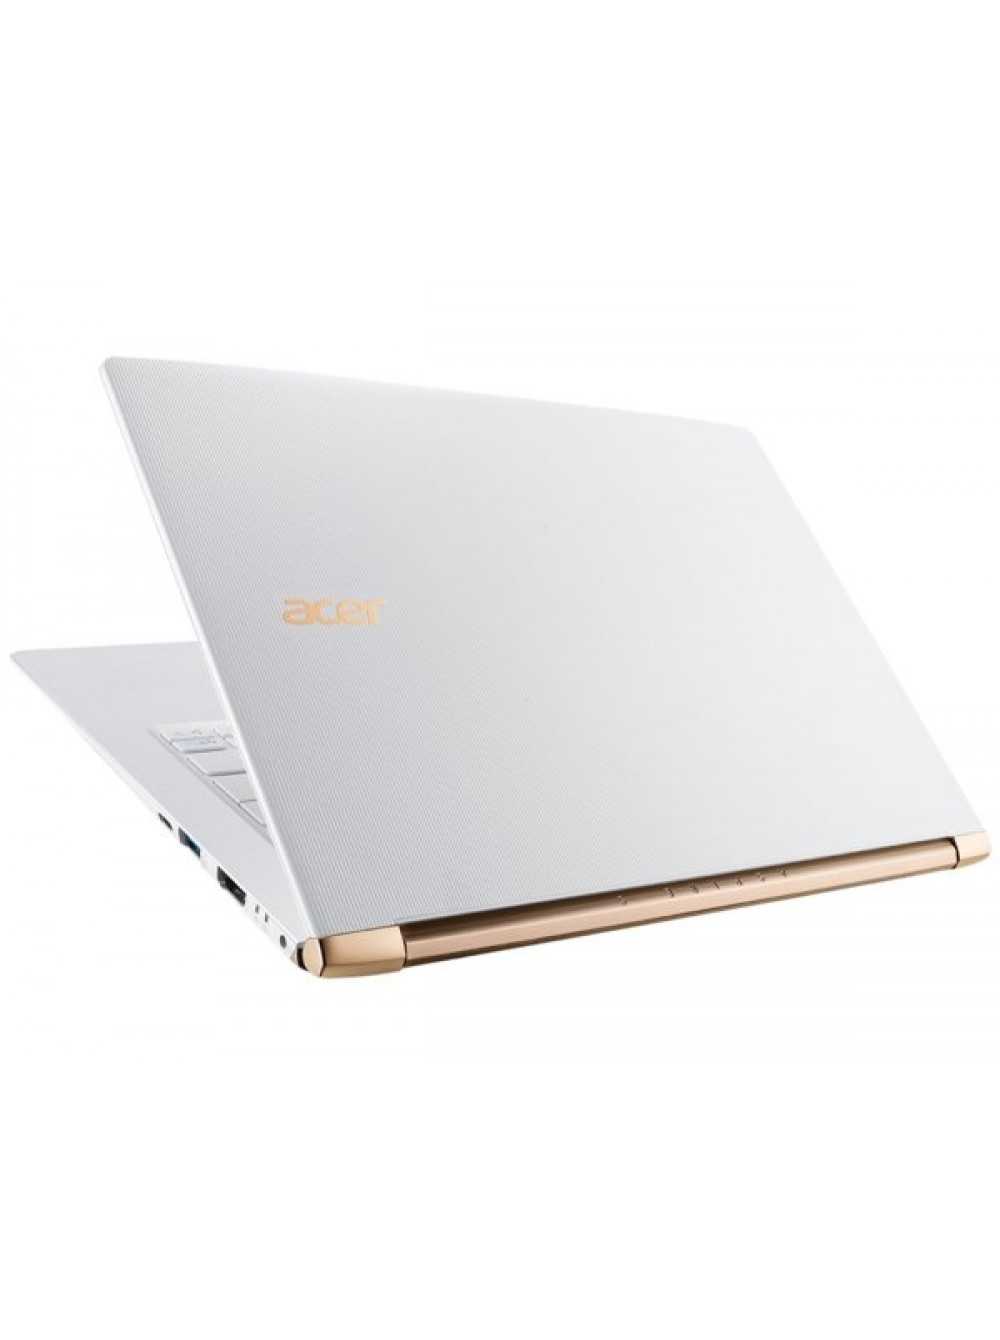 Ноутбук Acer Aspire S 13 (S5-371) - подробные характеристики обзоры видео фото Цены в интернет-магазинах где можно купить ноутбук Acer Aspire S 13 (S5-371)